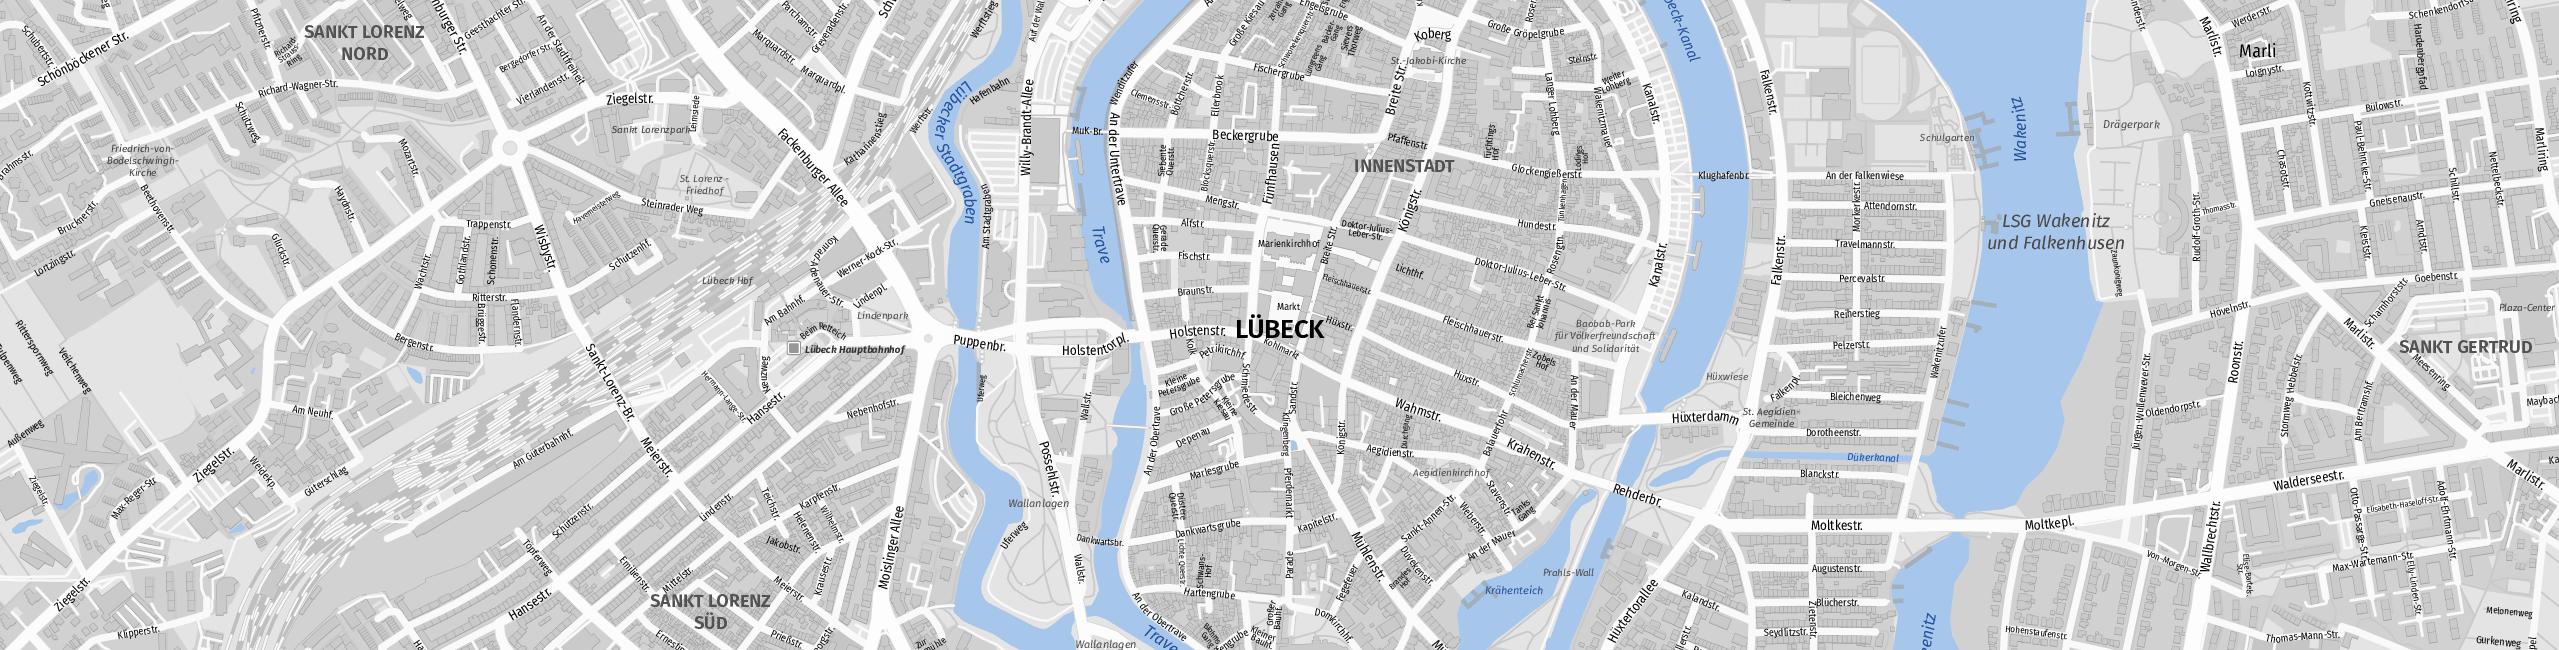 Stadtplan Lübeck zum Downloaden.